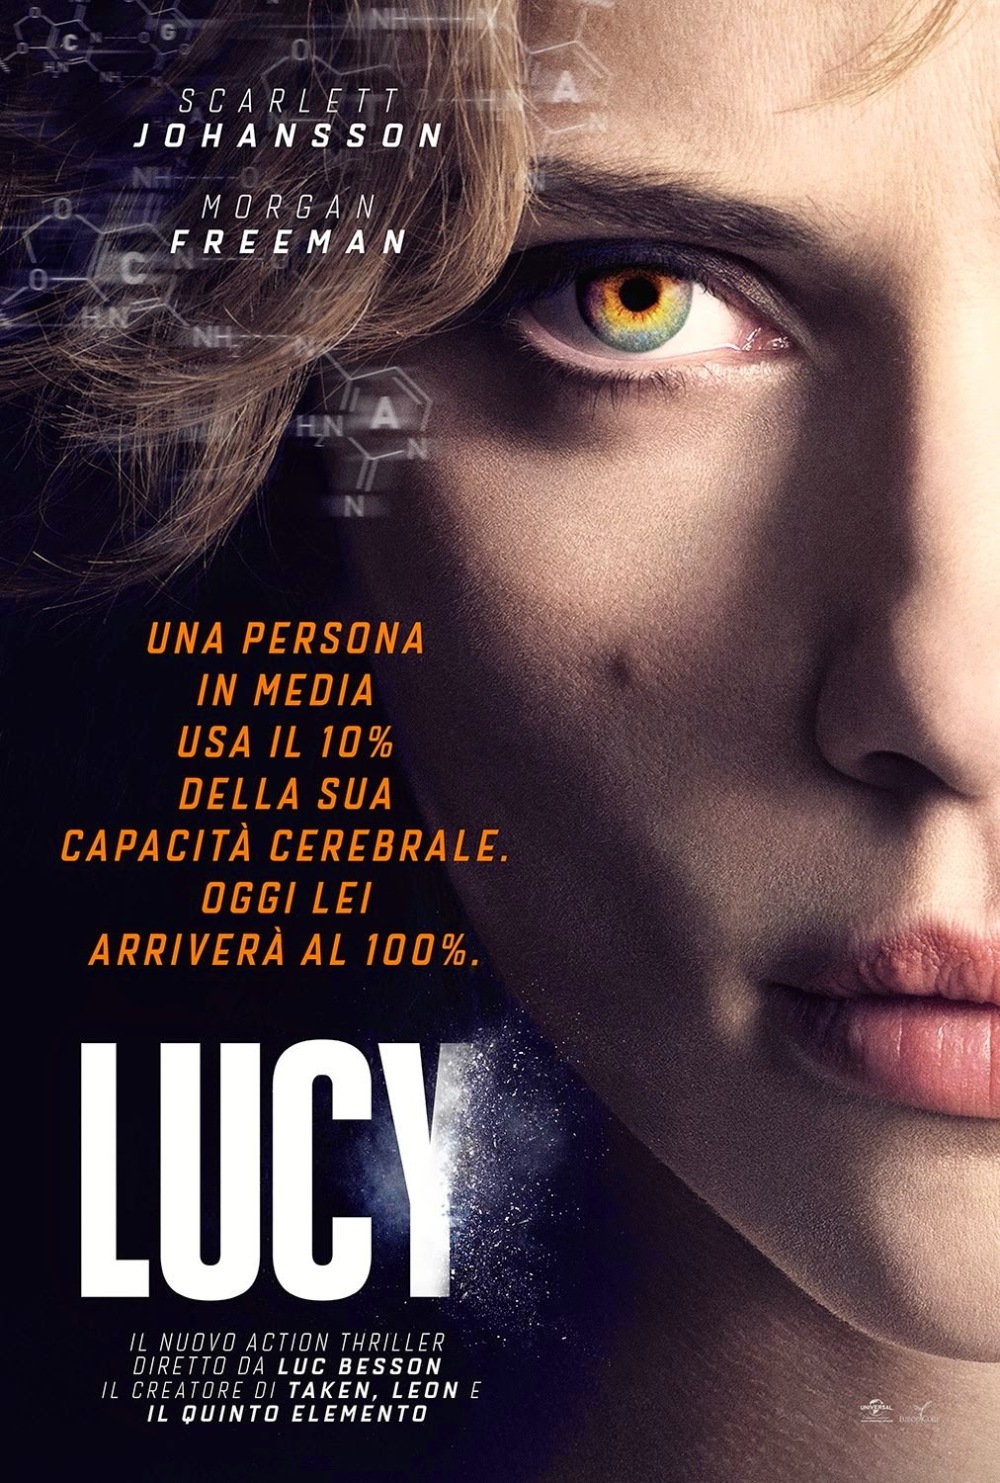 Nieuwe poster 'Lucy' met Scarlett Johansson.